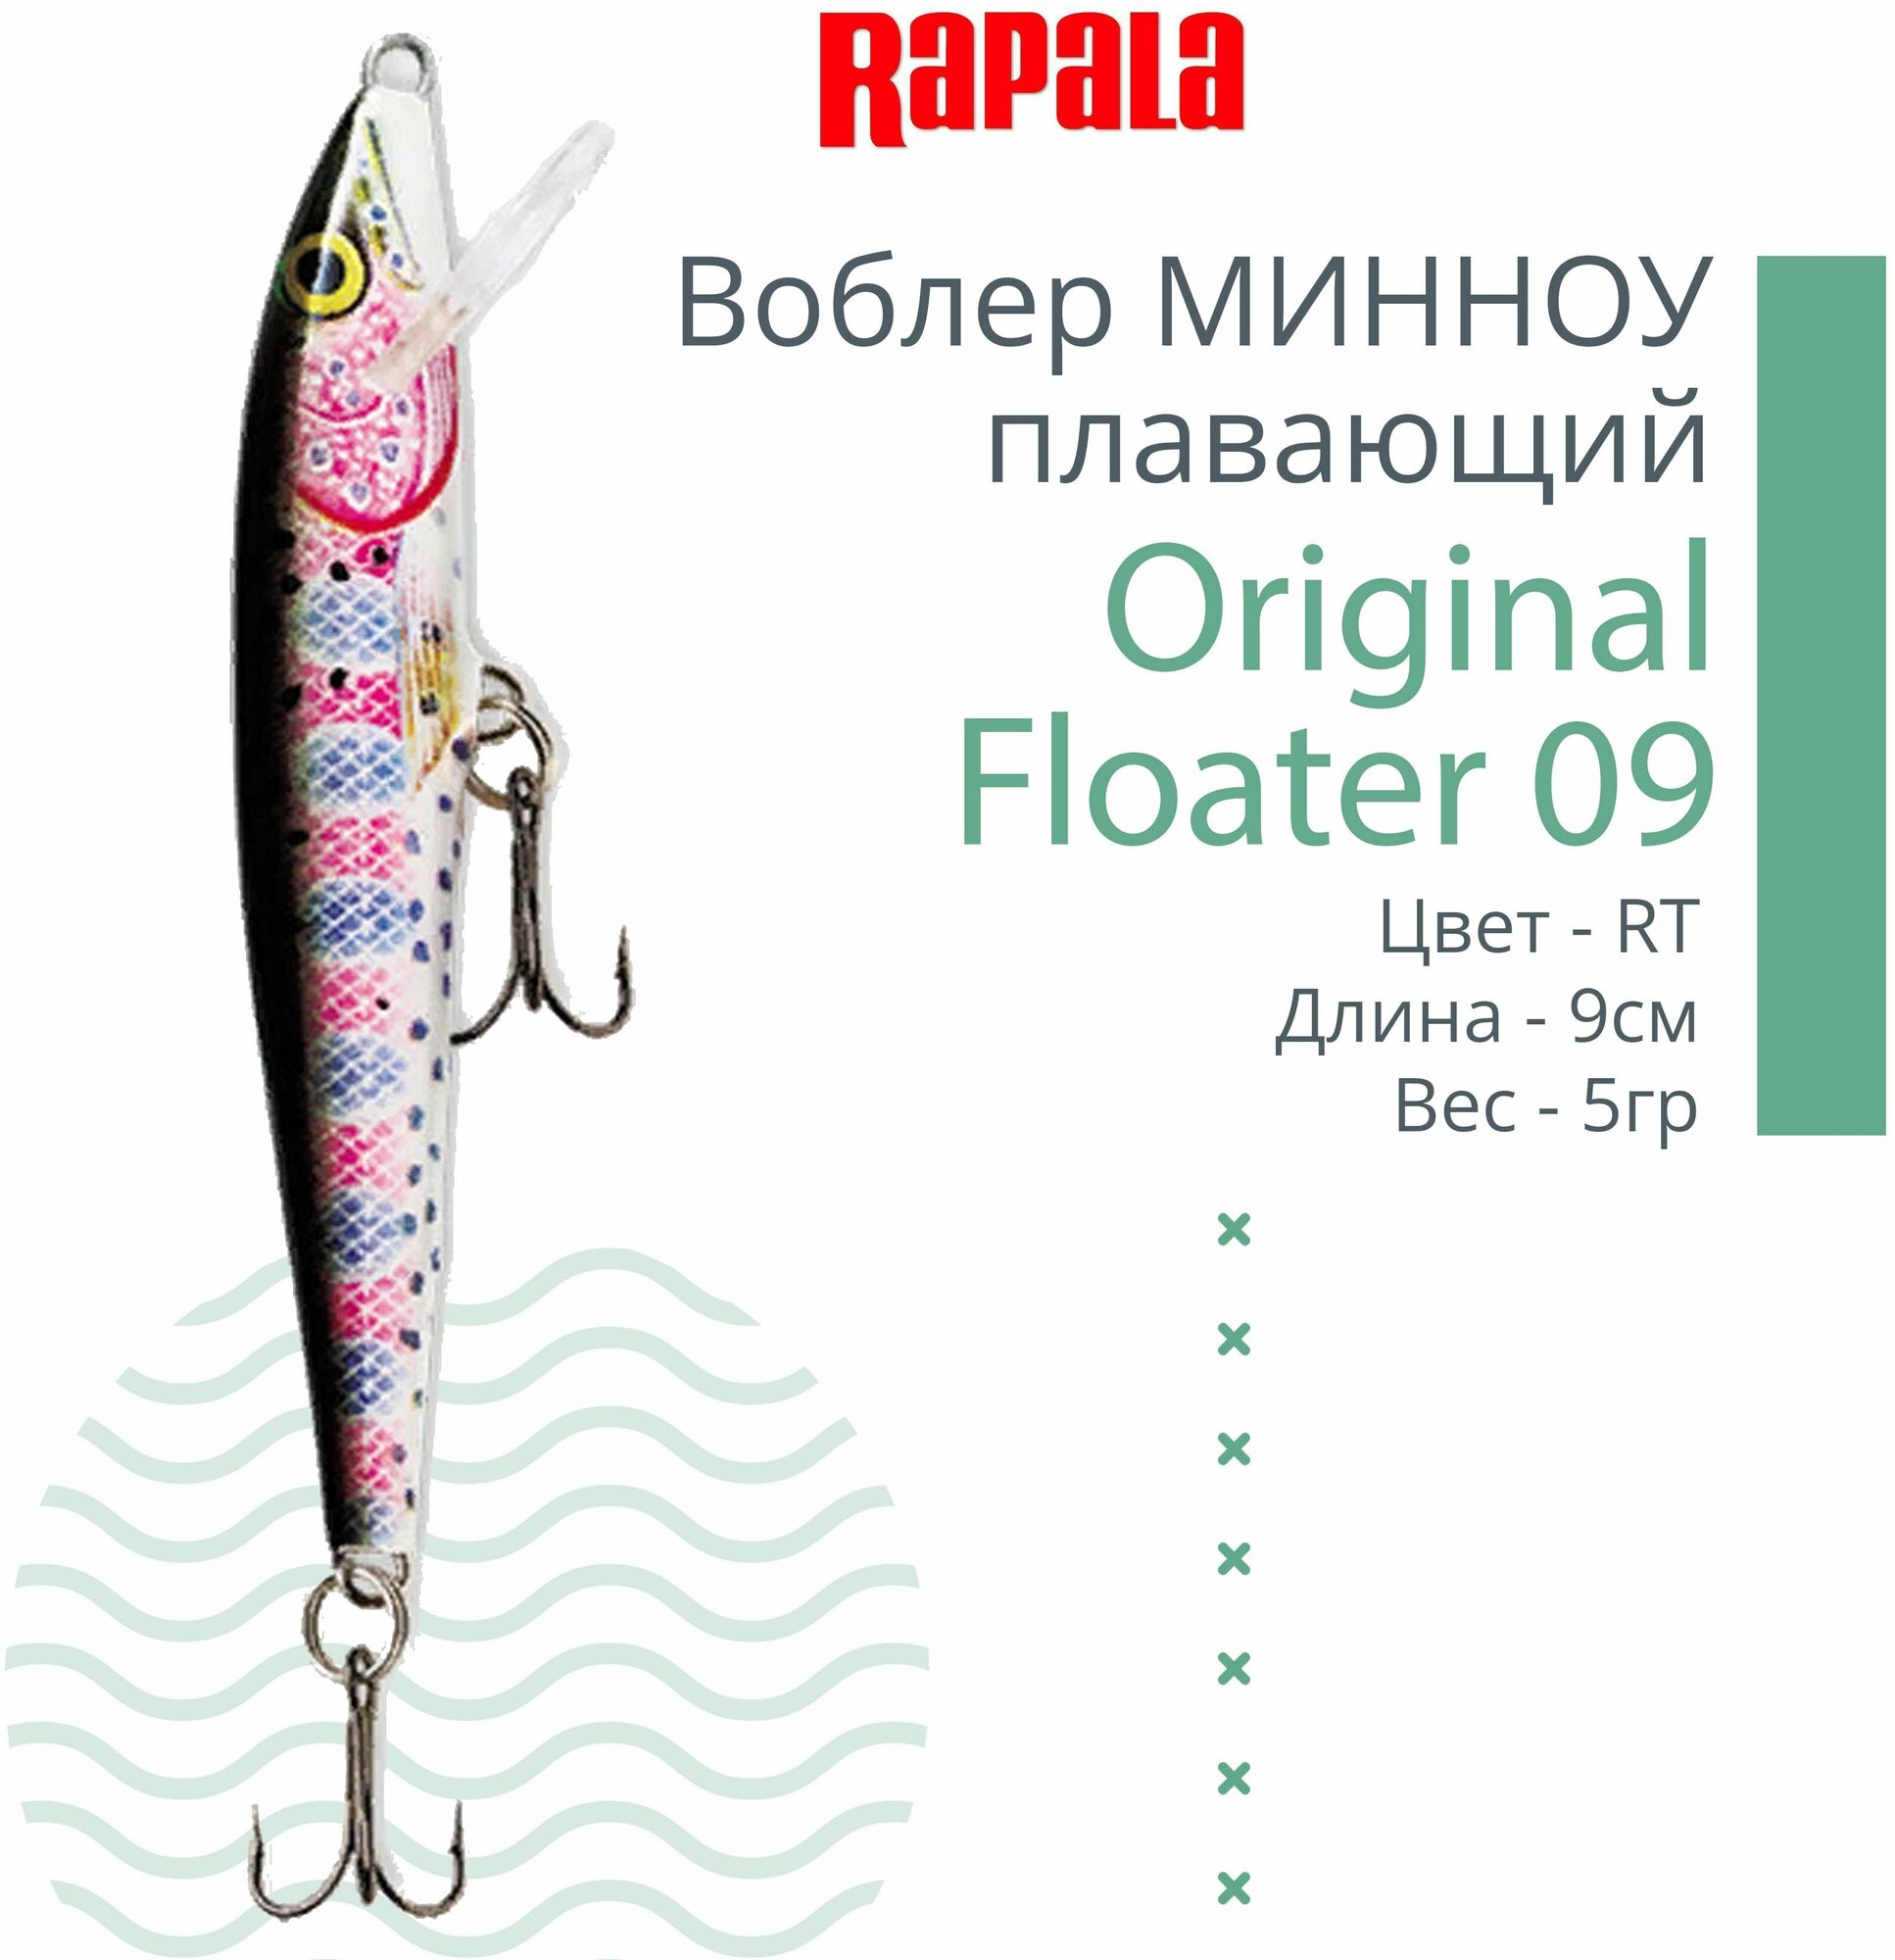 Воблер для рыбалки RAPALA Original Floater 09, 9см, 5гр, цвет RT, плавающий